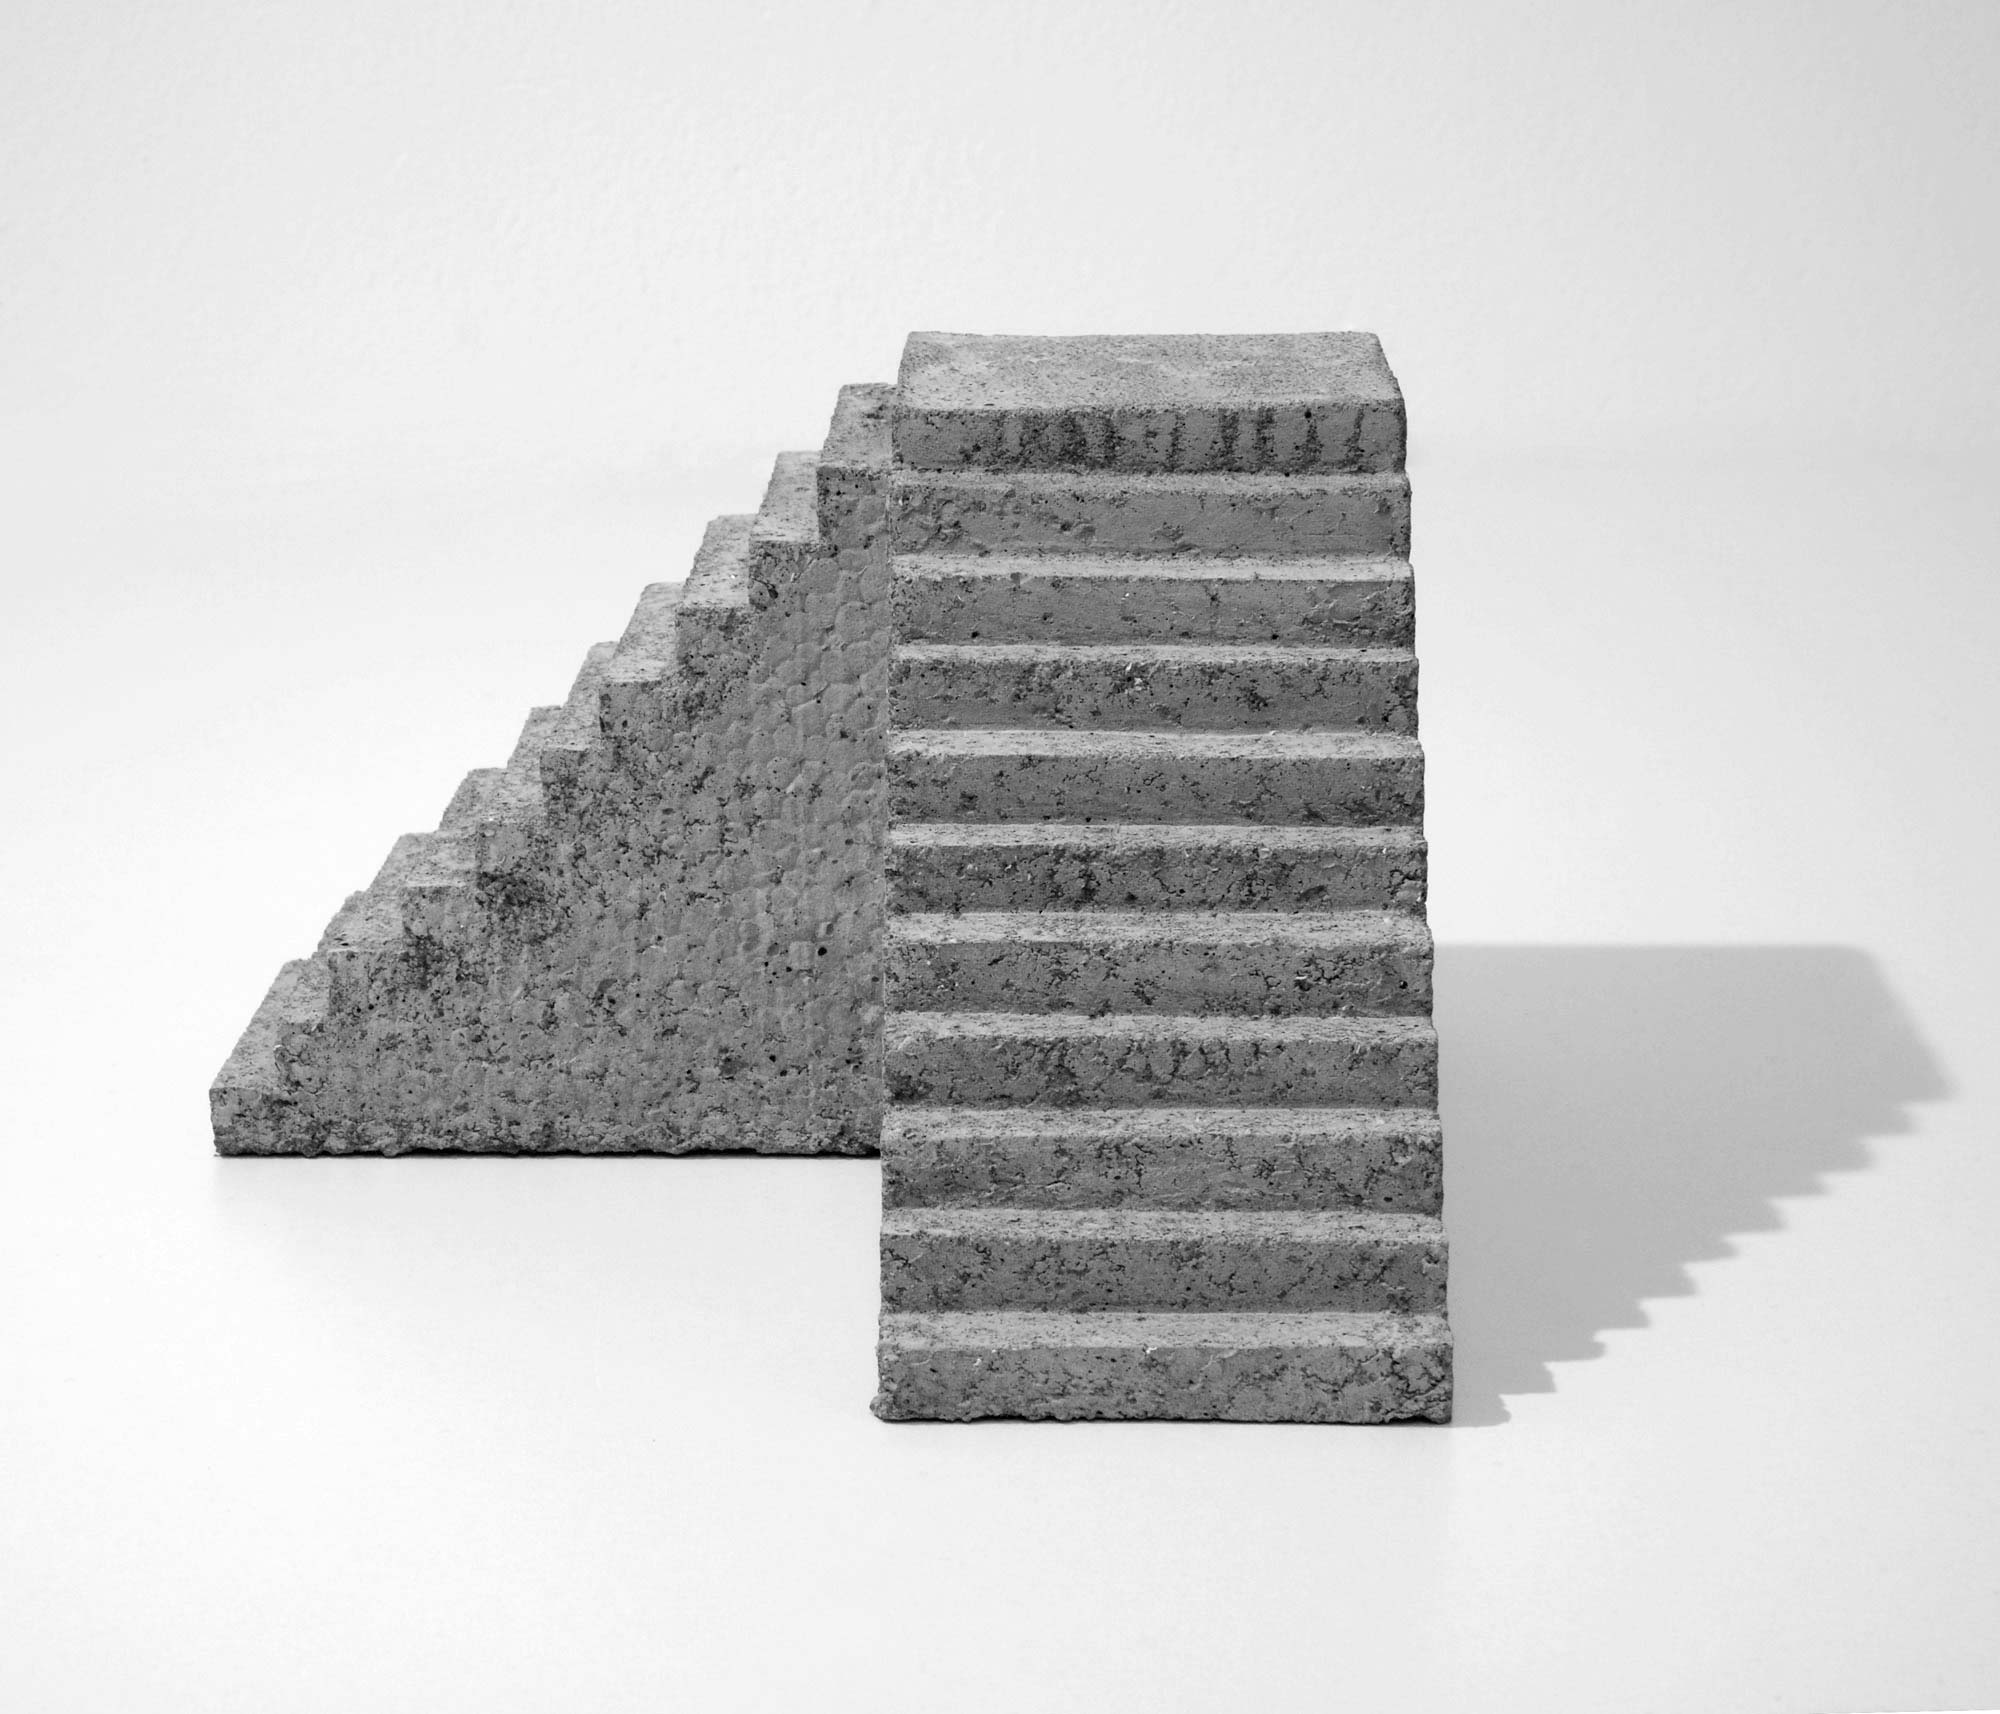 mattia listowski art design objet décoration sculpture béton moulage micro architecture maquette escalier entrée sortie édition limitée numérotée signée paris bruxelles 2020